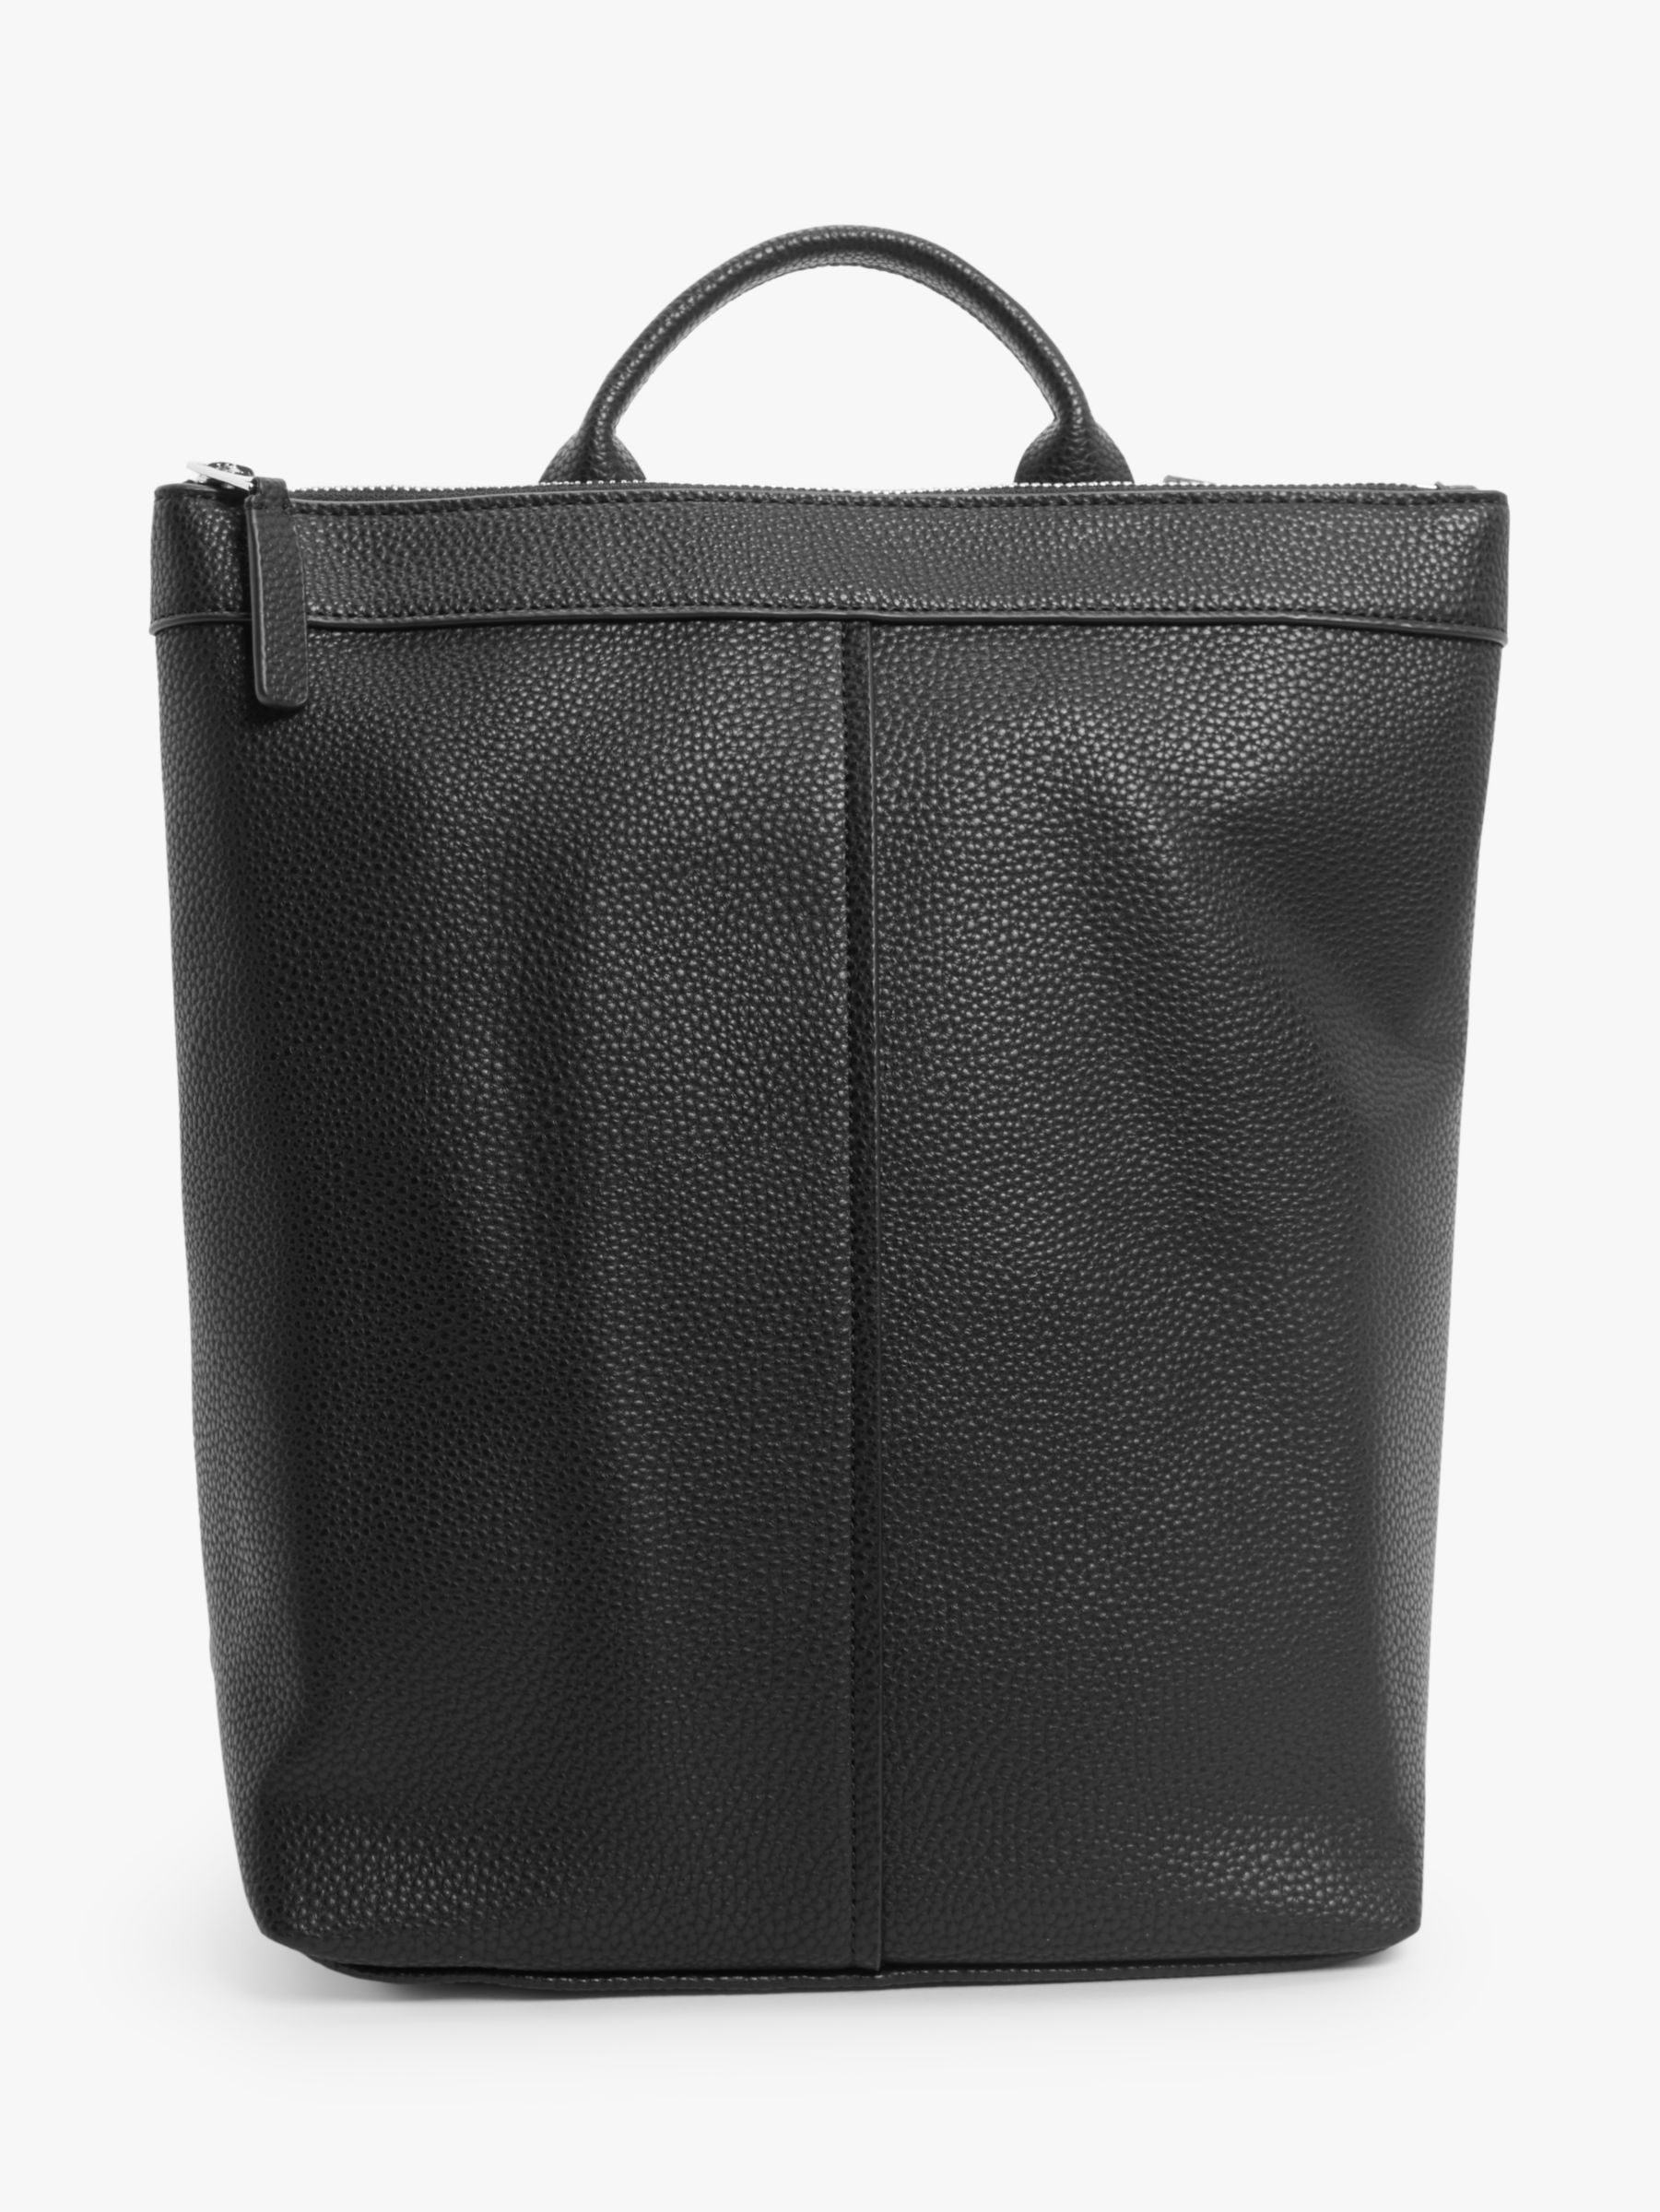 Kin by John Lewis Clare Shoulder Bag , Grey (632.940 IDR) ❤ liked